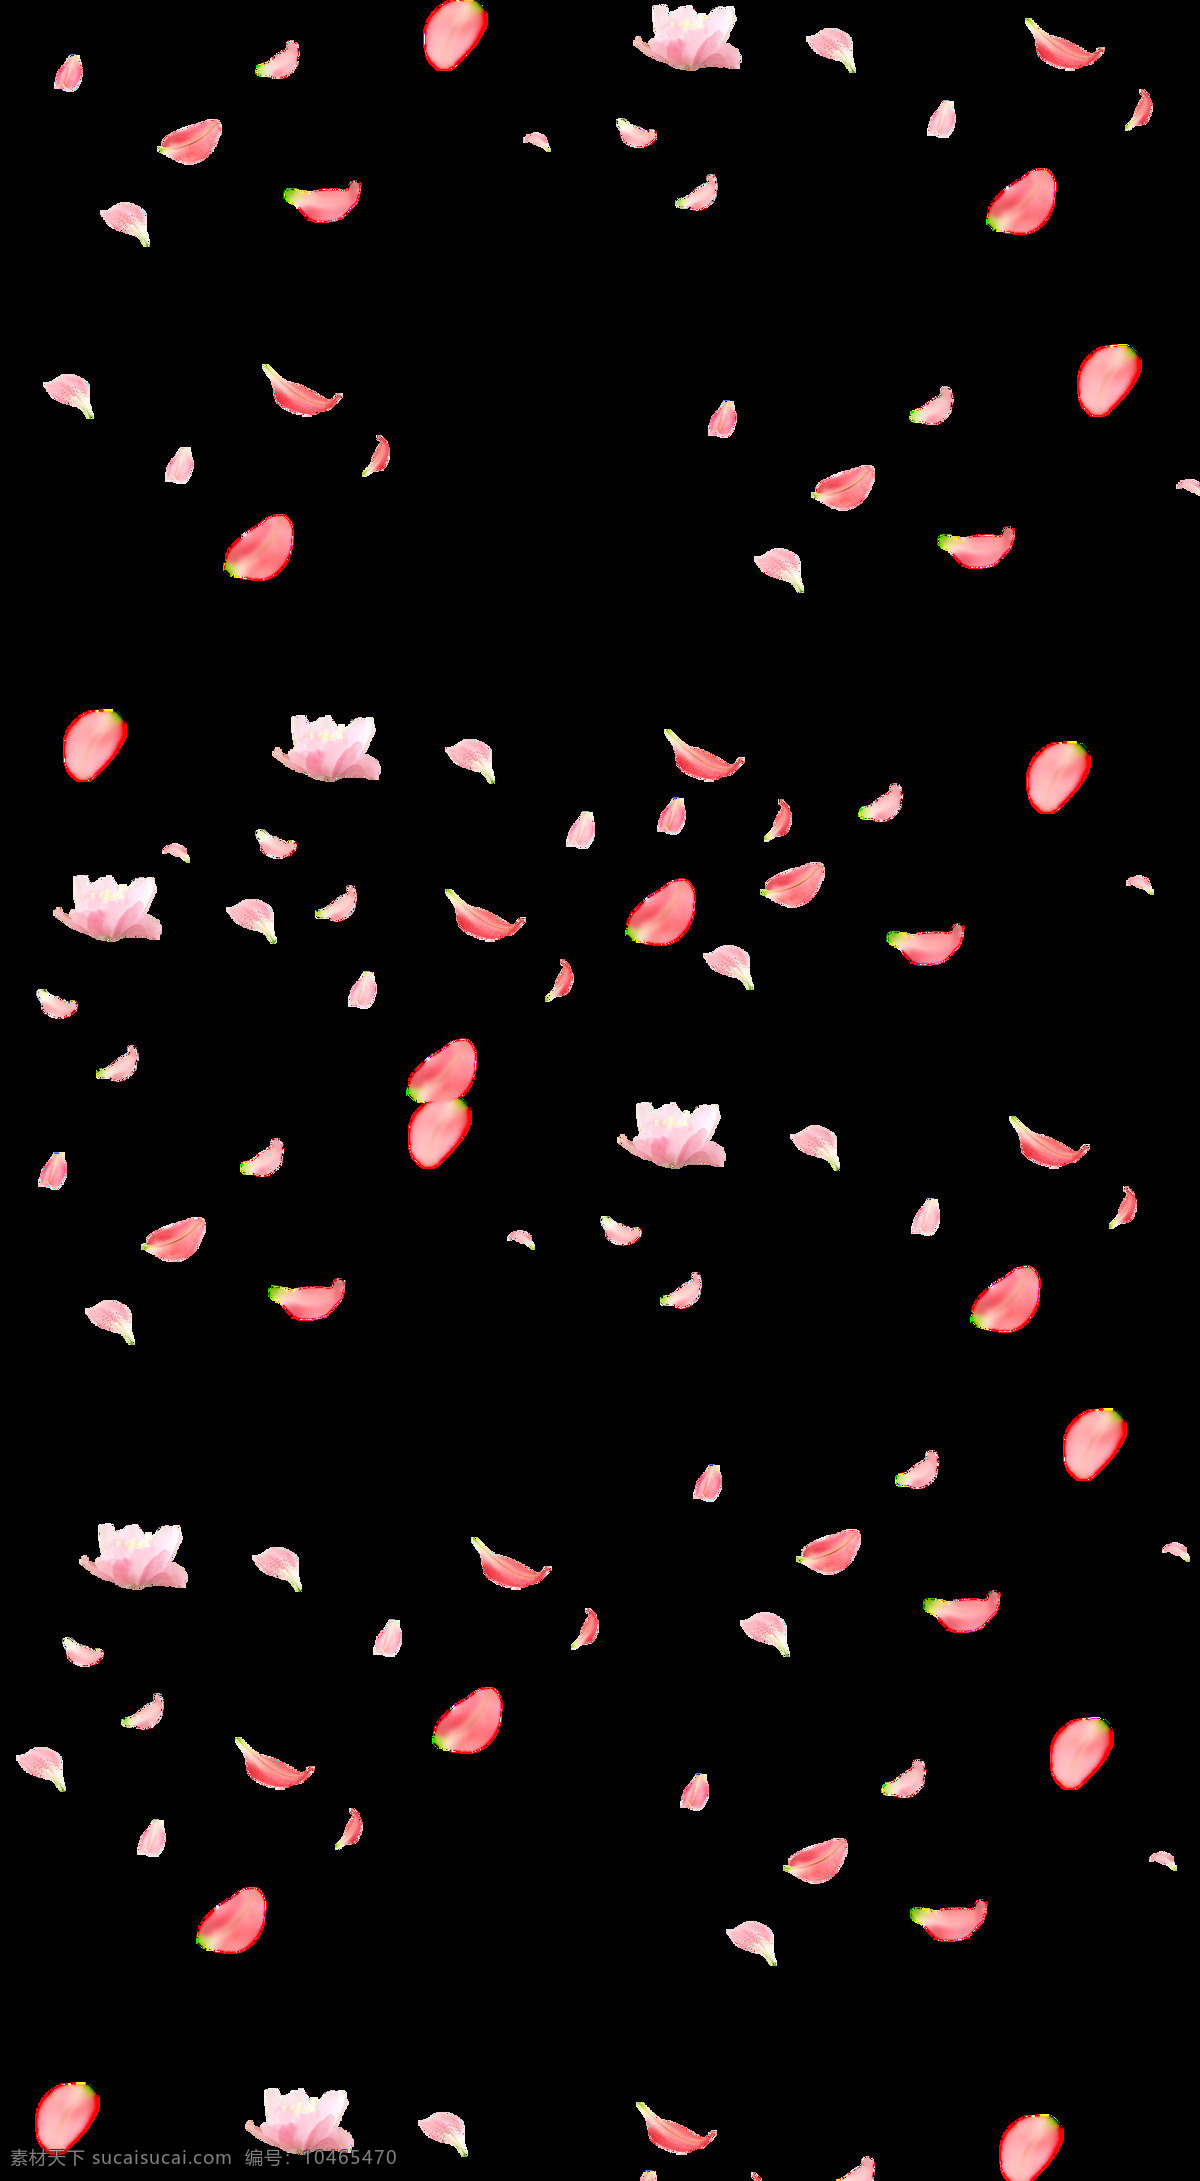 花瓣图片 花瓣 浪漫花瓣 粉色花瓣 桃花png 漂浮花瓣 png素材 遍地桃花